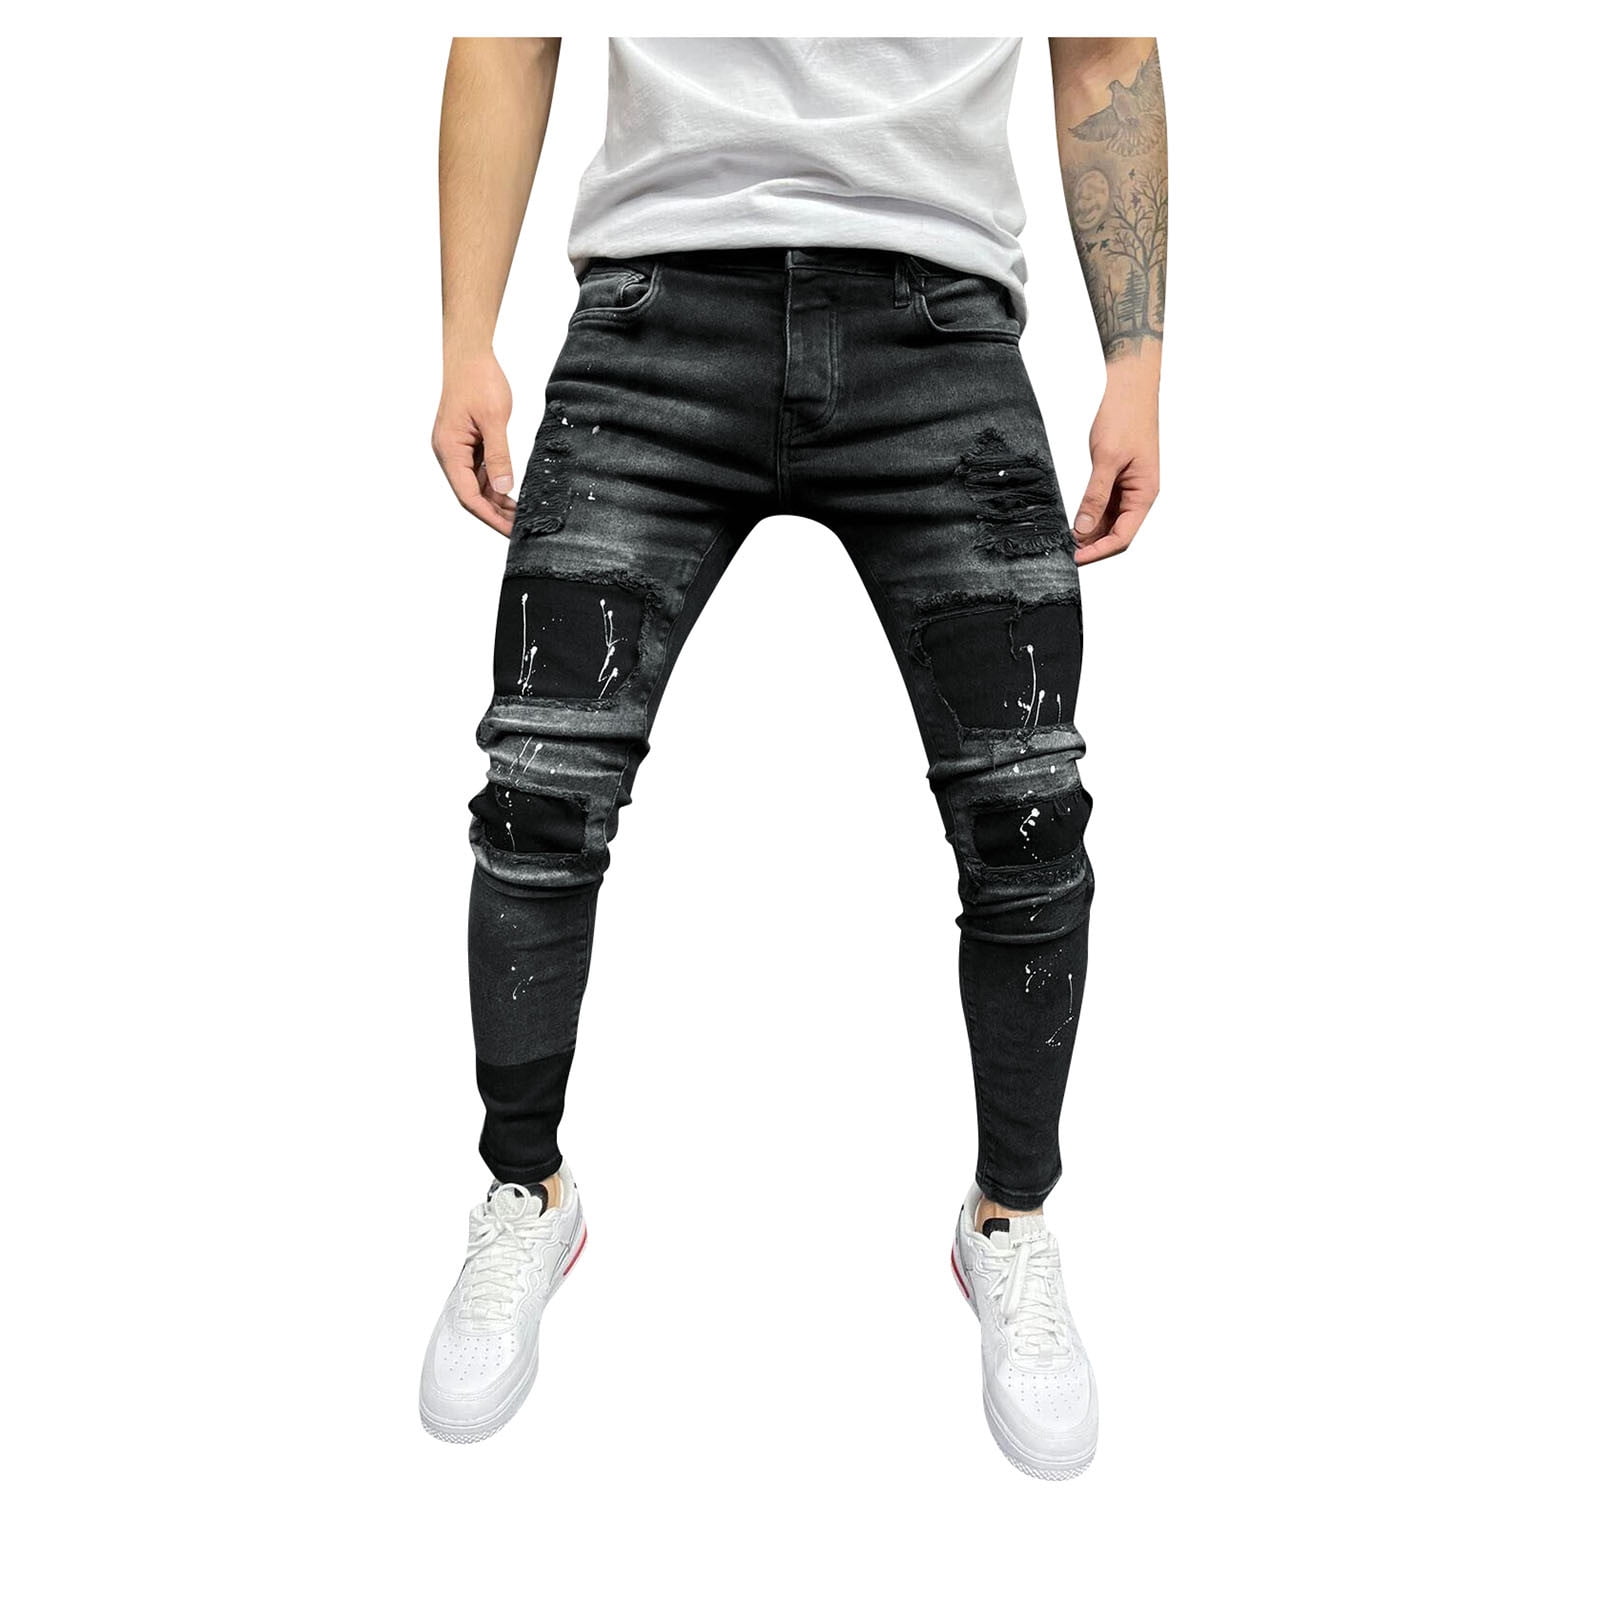 uld Sprællemand gift Mens Classic Slim Fit Stretch Jeans for Men Skinny Flex Denim Pants Ripped  Designer - Walmart.com